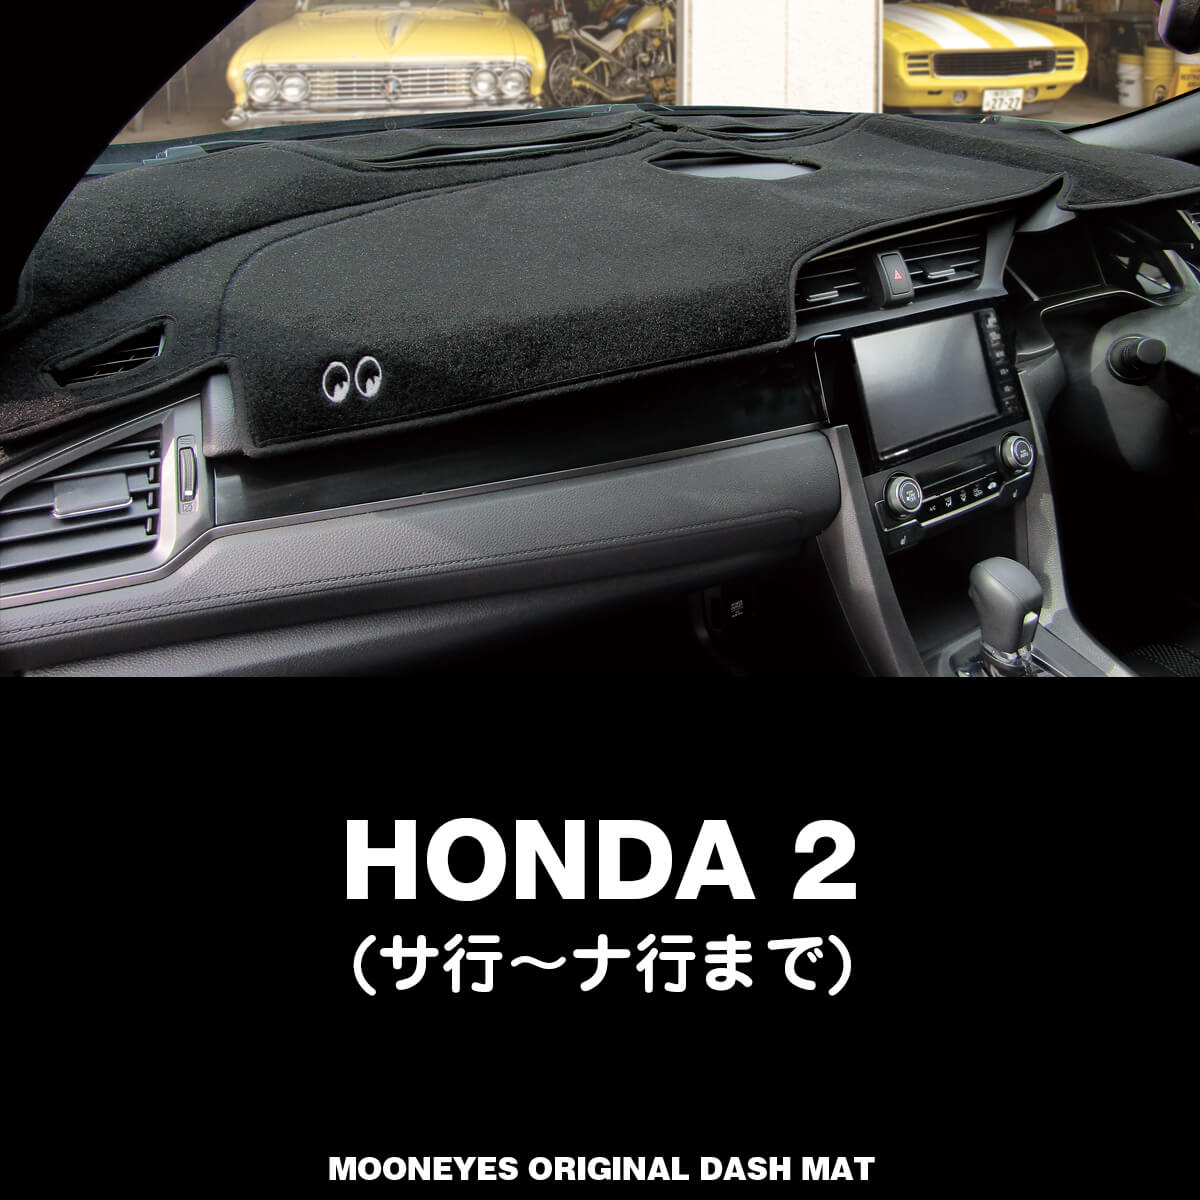 ムーンアイズ Mooneyes ホンダ Honda 2 用 オリジナルダッシュマット ダッシュボードマット 車種名 サ行 ナ行 おしゃれ